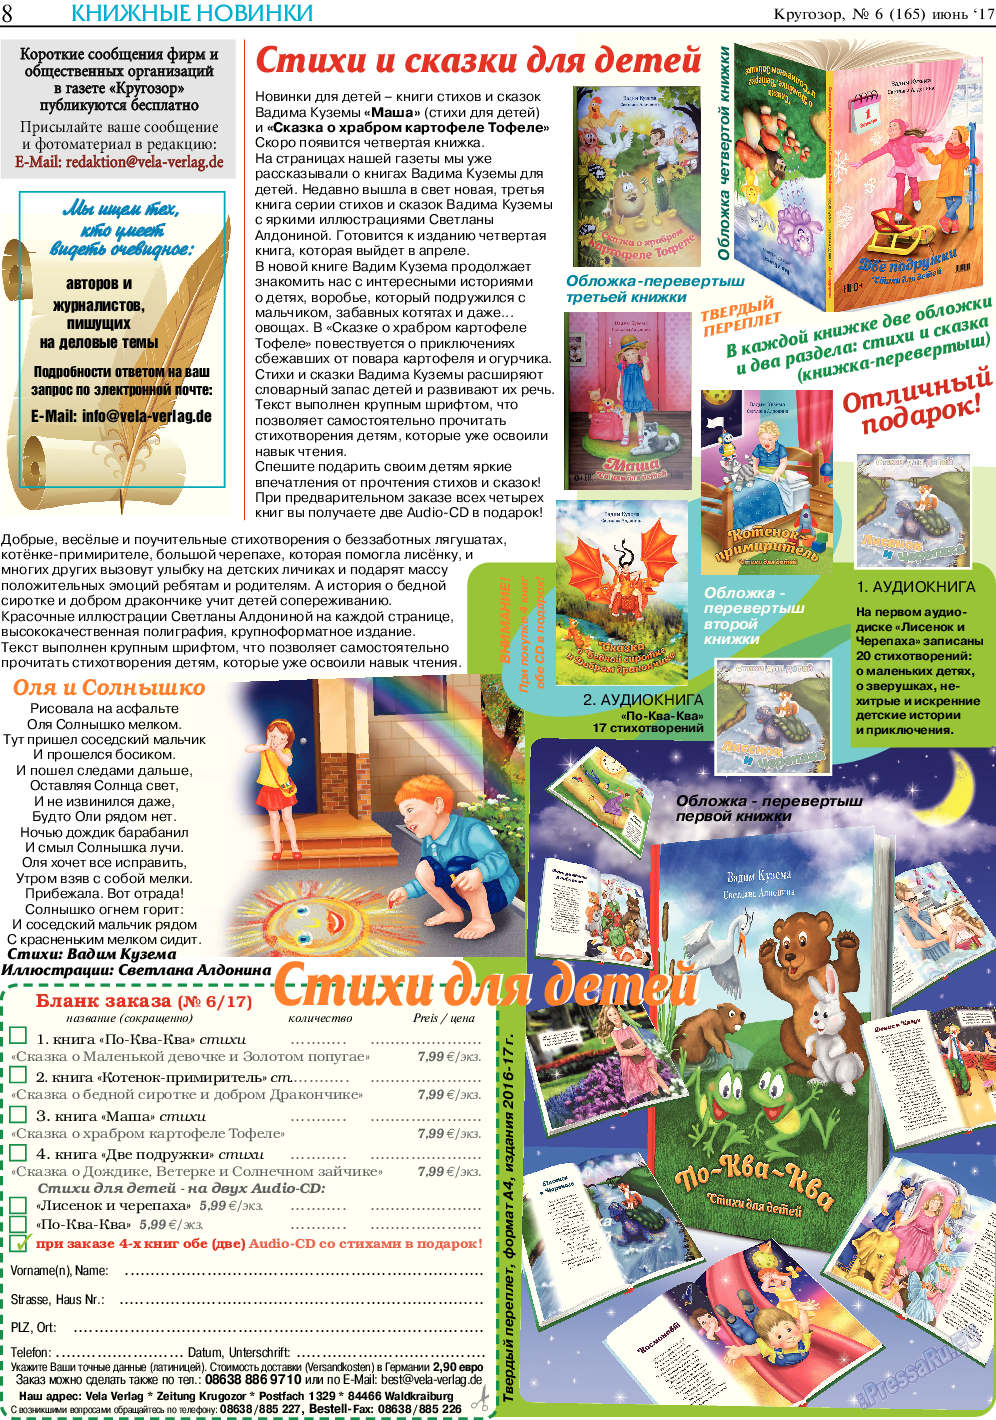 Кругозор, газета. 2017 №6 стр.8